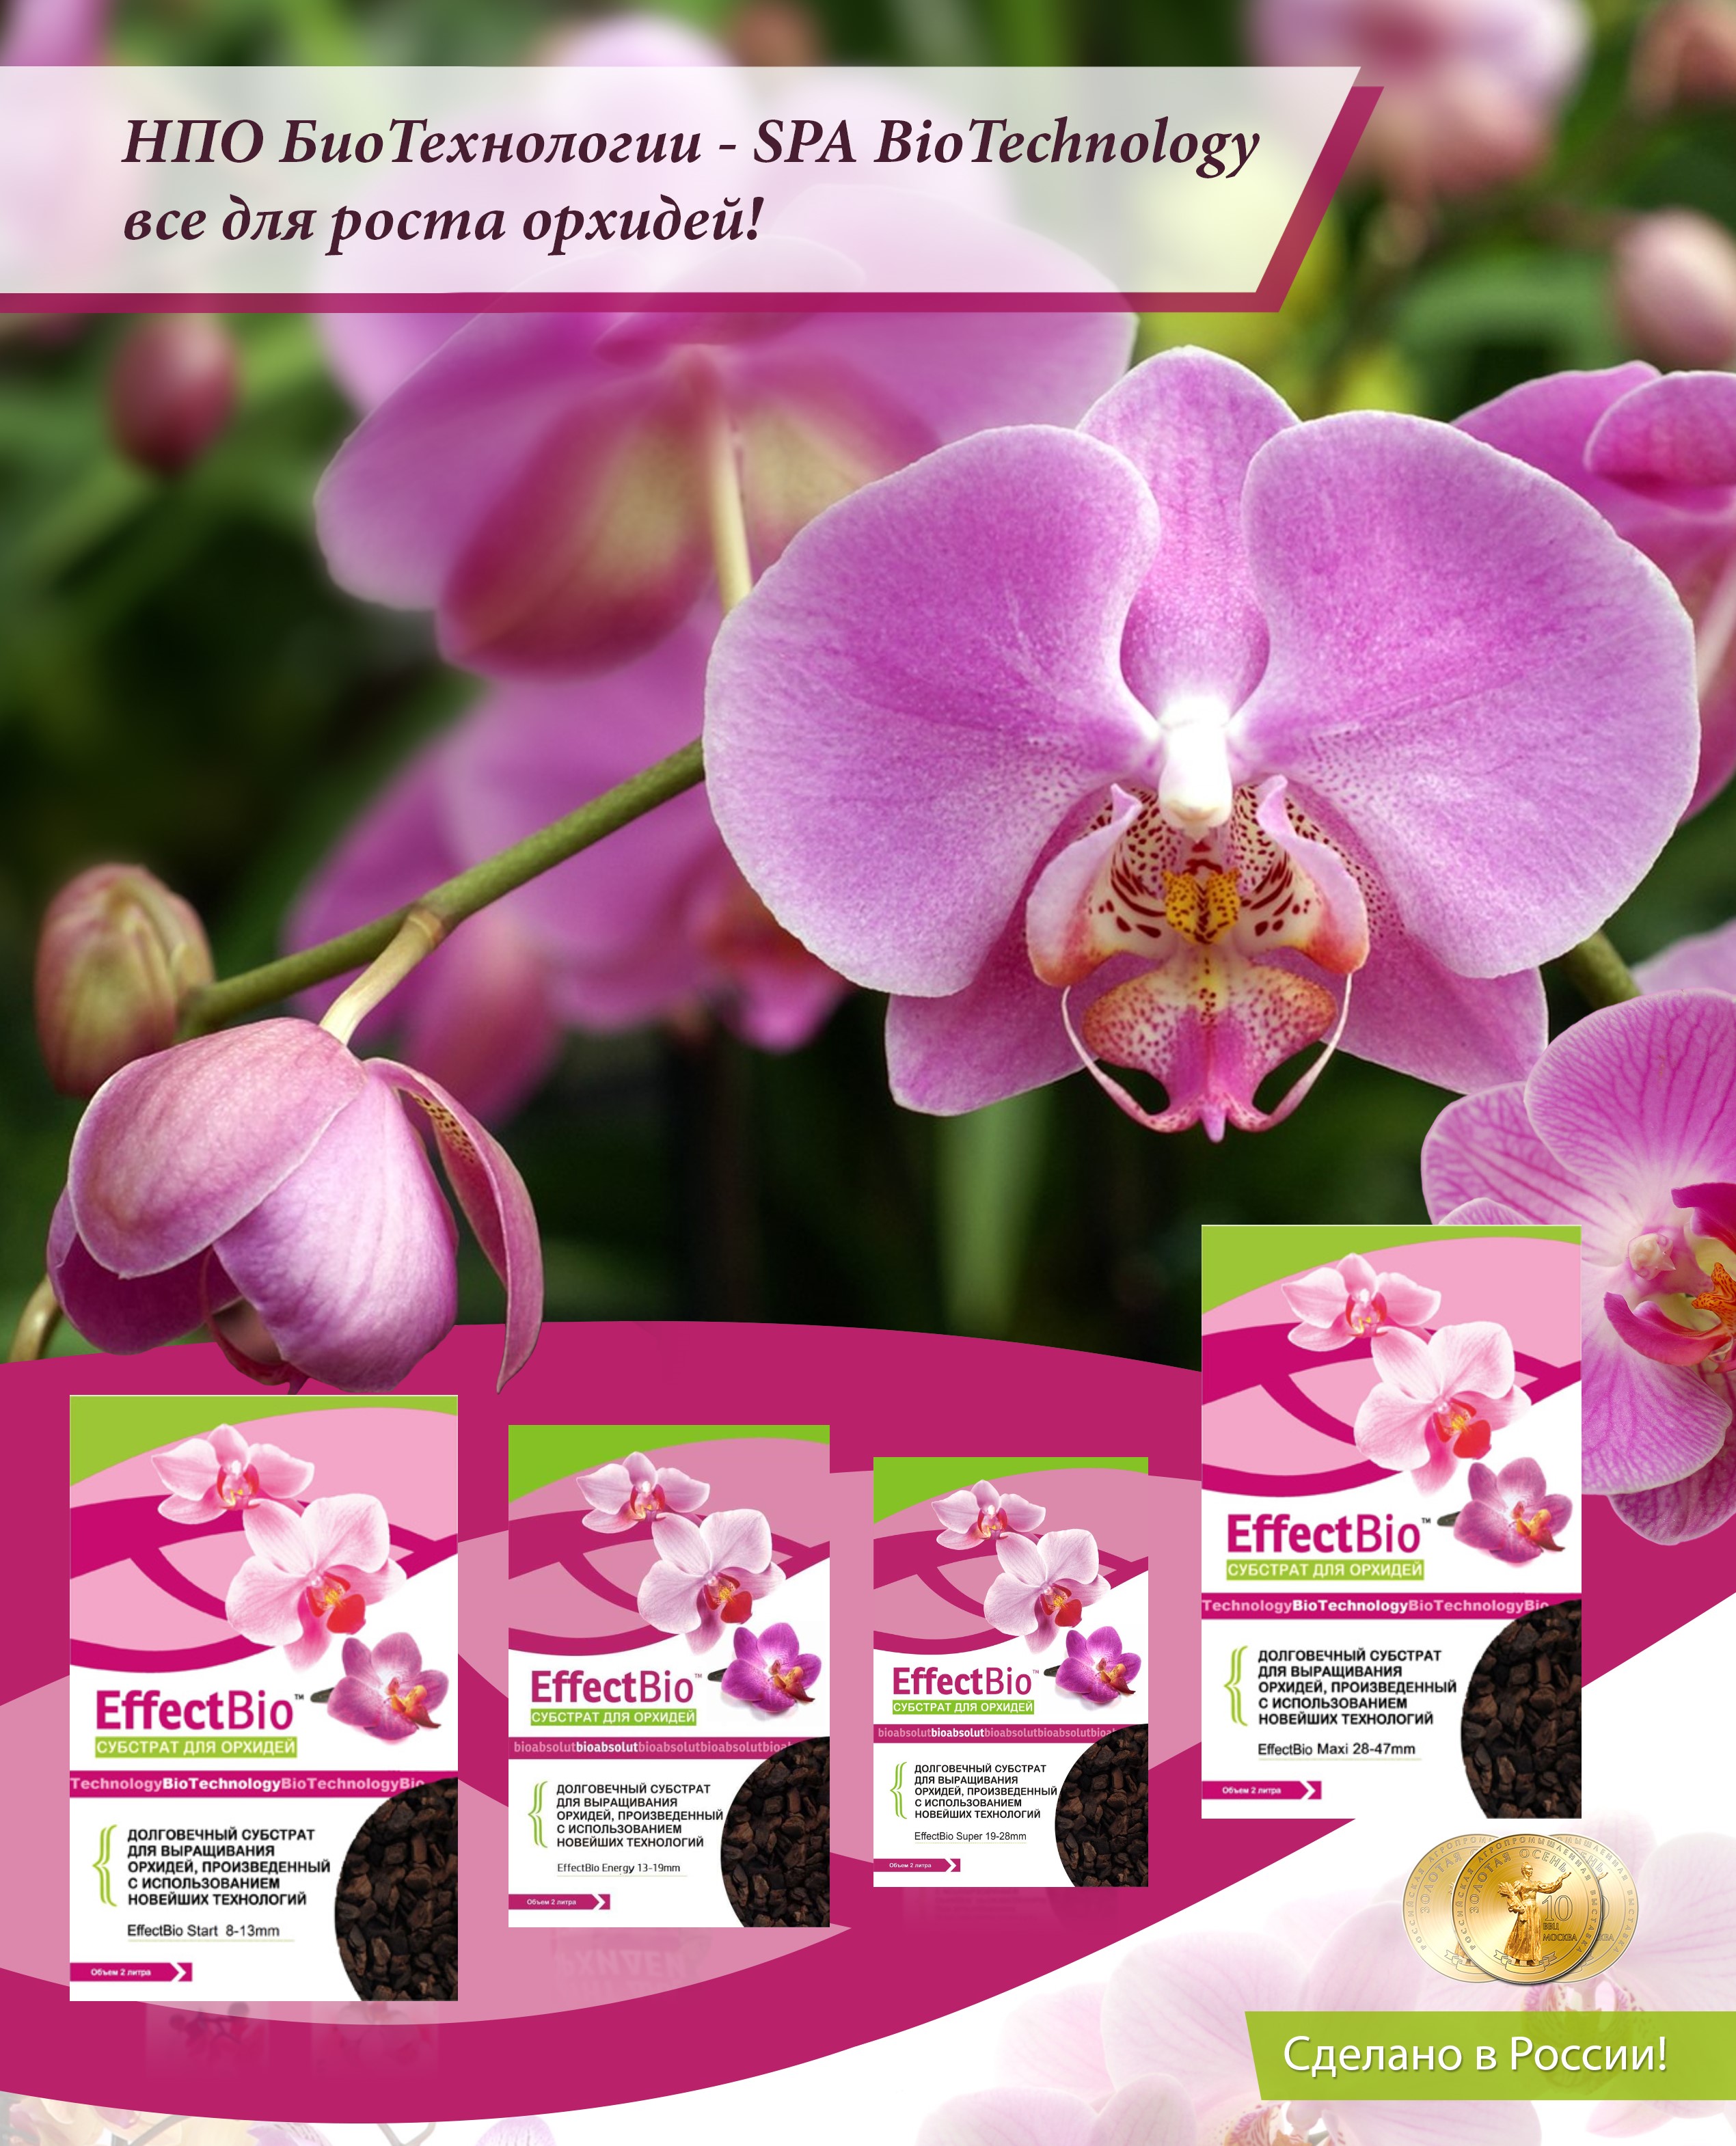 Субстрат для выращивания орхидей "EffectBio™" 2 литра, Цитокининовая паста, эффект био, effectbio, гормональная паста, для орхидей, комнатных растений, фото, картинки, цена, купить, Субстрат эффект био, кора сосновая, кора для орхидей, орхиата, effectbio, фото, картинки, субстрат	  Субстрат для орхидей «EffectBio™» Start 8-13mm 2 литра    Субстрат для выращивания и пересадки орхидей ЭффектБио Старт 8-13 мм производится в России, только из 100% натуральных ингридиентов без примения химии!  Субстрат "ЭффектБио" произведен по собственной разработанной рецептуре с использованием новейших технологий на Российском Научно Производственном Объединении "БиоТехнологии" специально для выращивания орхидей всех сортов и видов.   Субстрат мелкой фракции Старт 8-13 мм из представленных в линейке торговой марки «ЭффектБио™» рекомендован для пересадки деток и молодых орхидей и для других видов растений, требующих высокой воздухопроницаемости субстрата: AFP (воздухопроницаемость) 41-51%, WHC (влагоемкость) ≈59,1